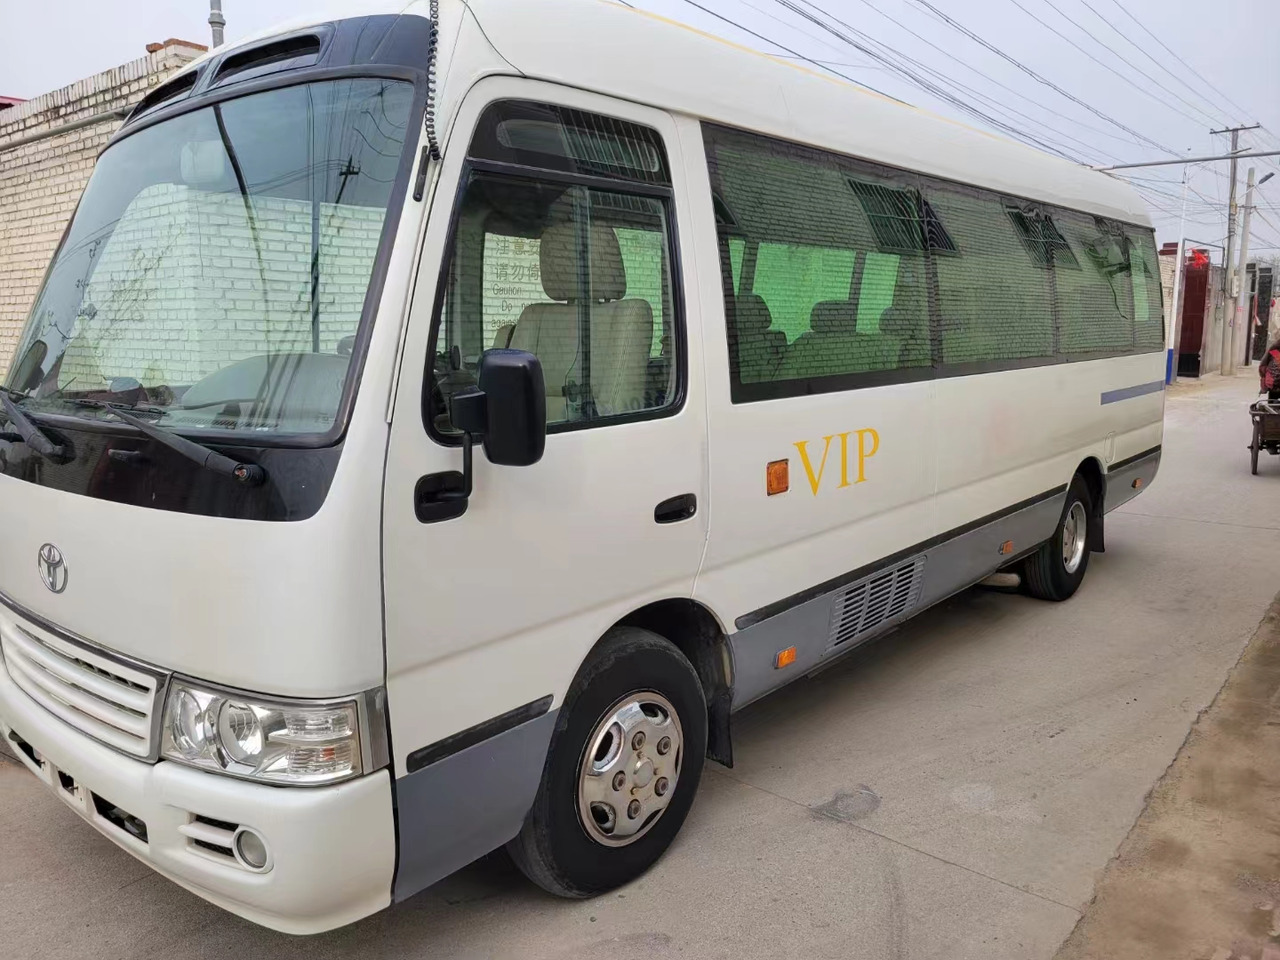 Minibus, Transport de personnes TOYOTA Coaster passenger van city bus coach: photos 3